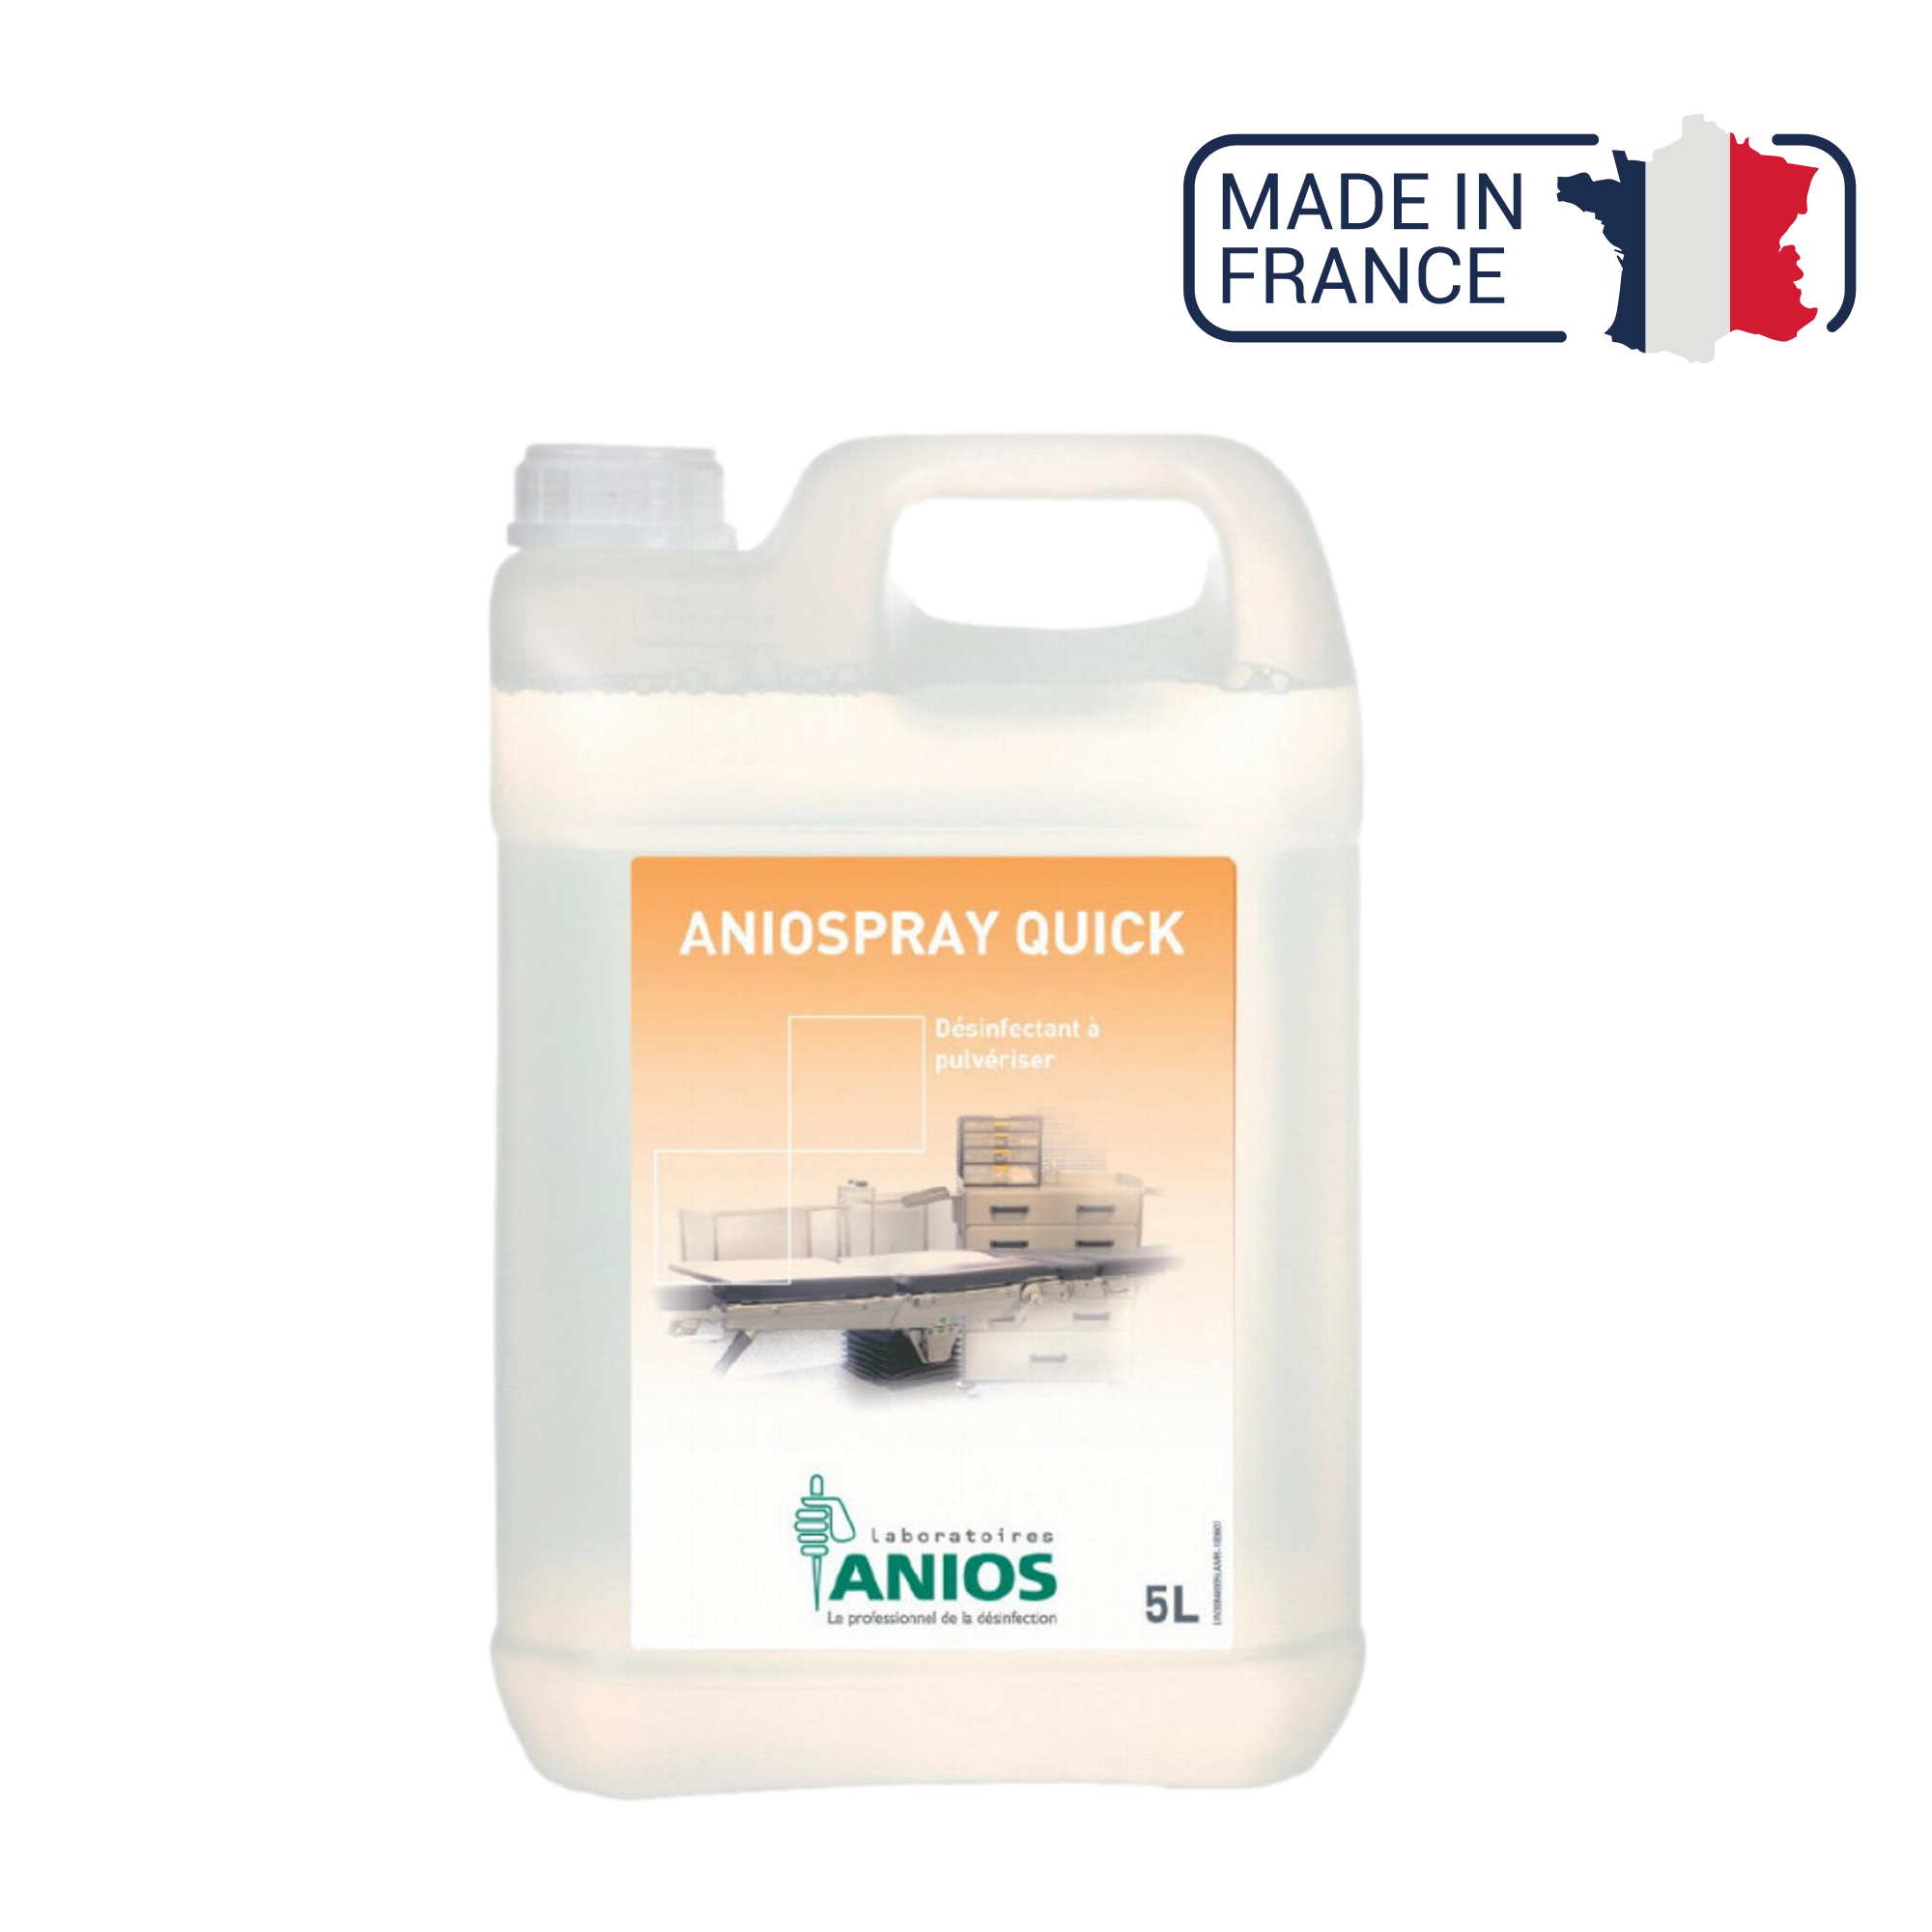 Aniospray Quick - désinfectant à action rapide - 1L ou 5L - Anios Anios